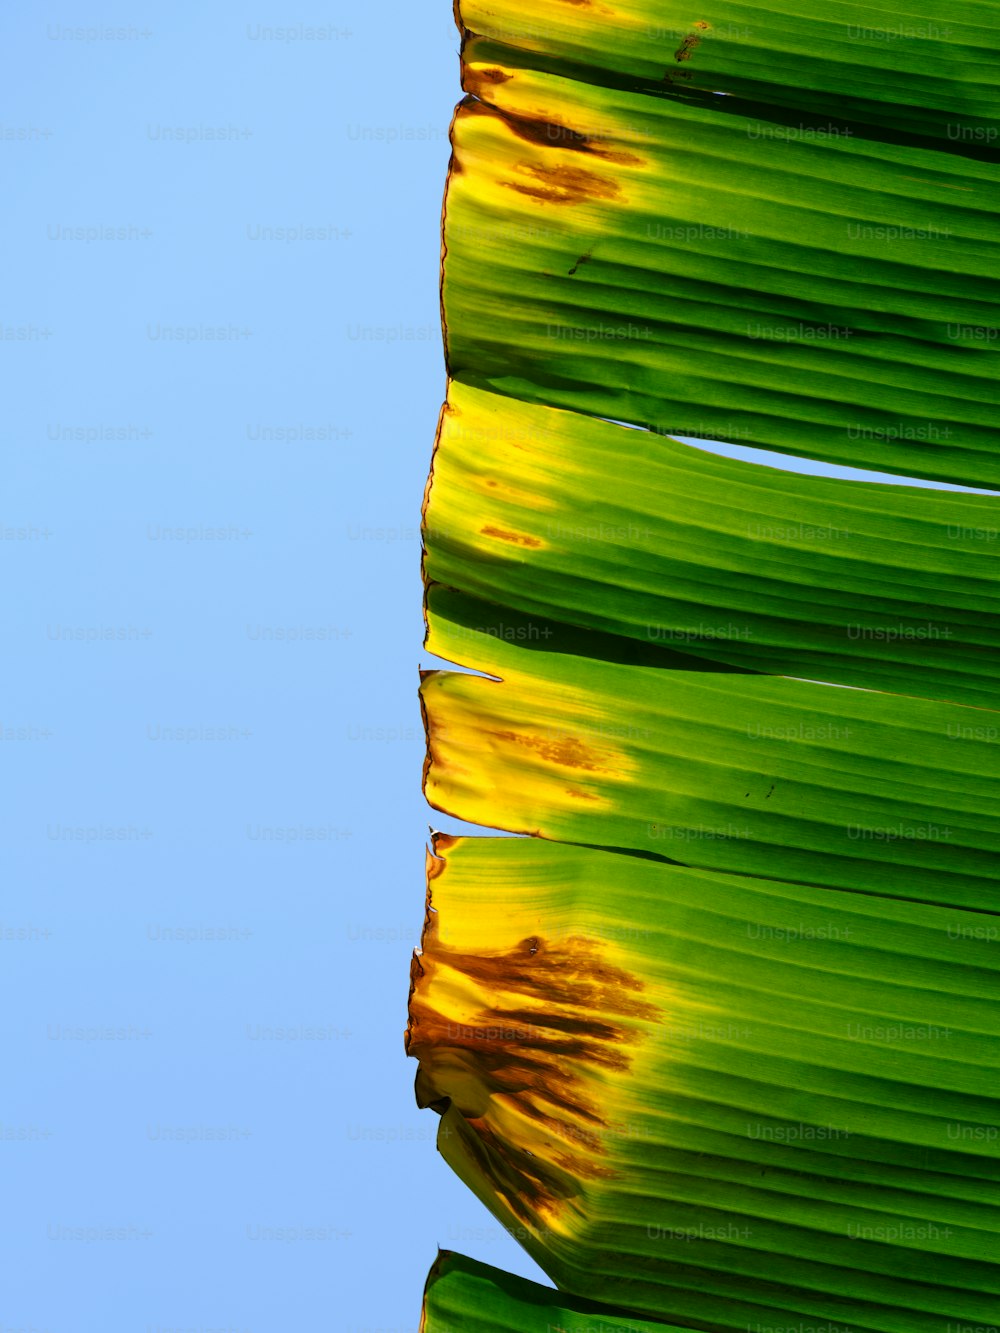 un primer plano de una hoja verde con manchas amarillas